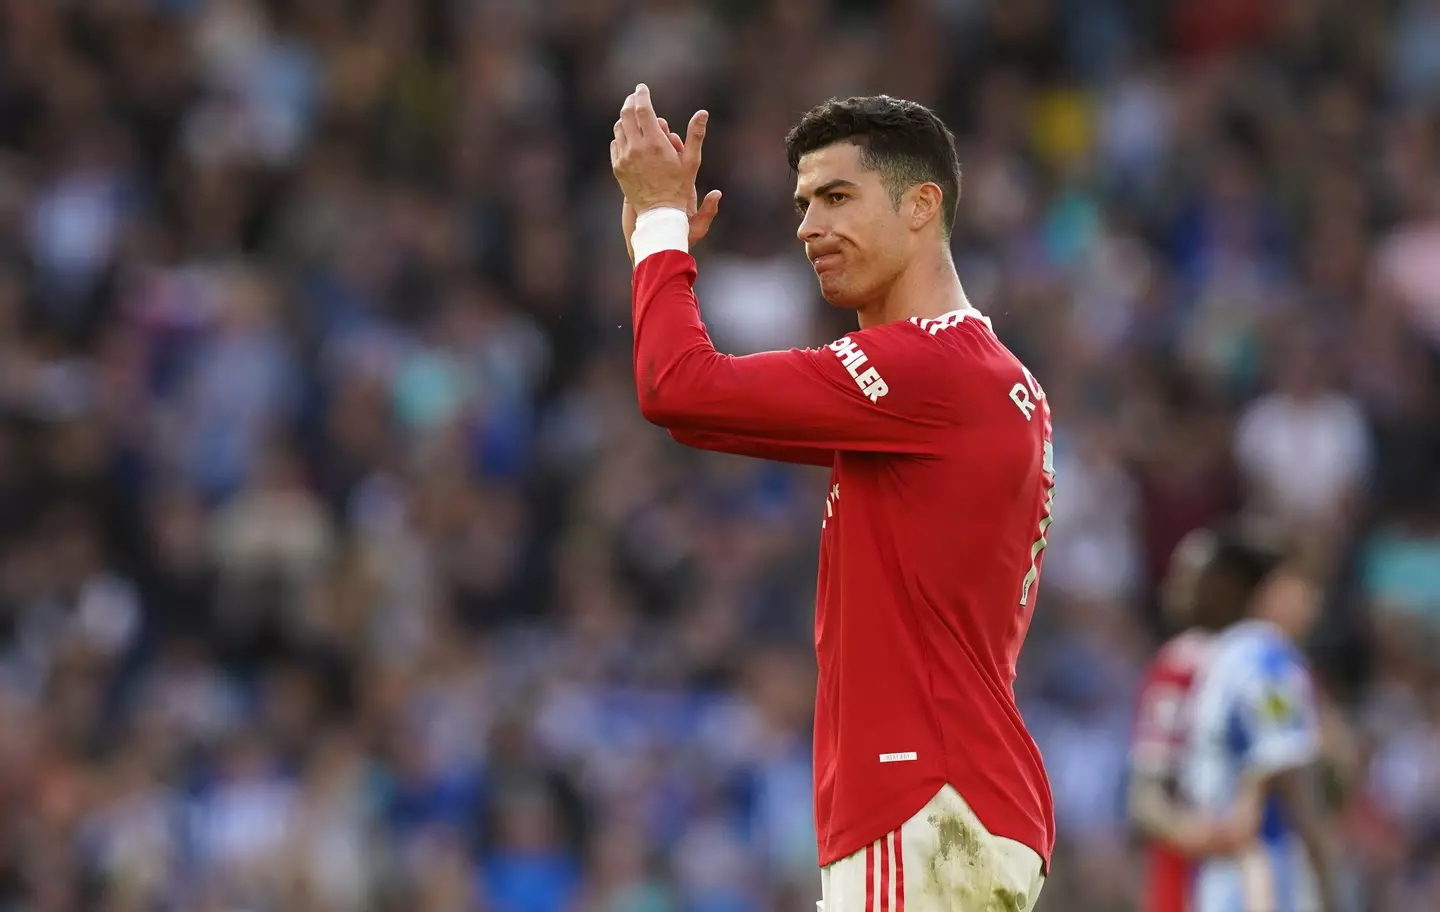 Ten Hag has described Ronaldo as a 'giant' player (Image: PA)